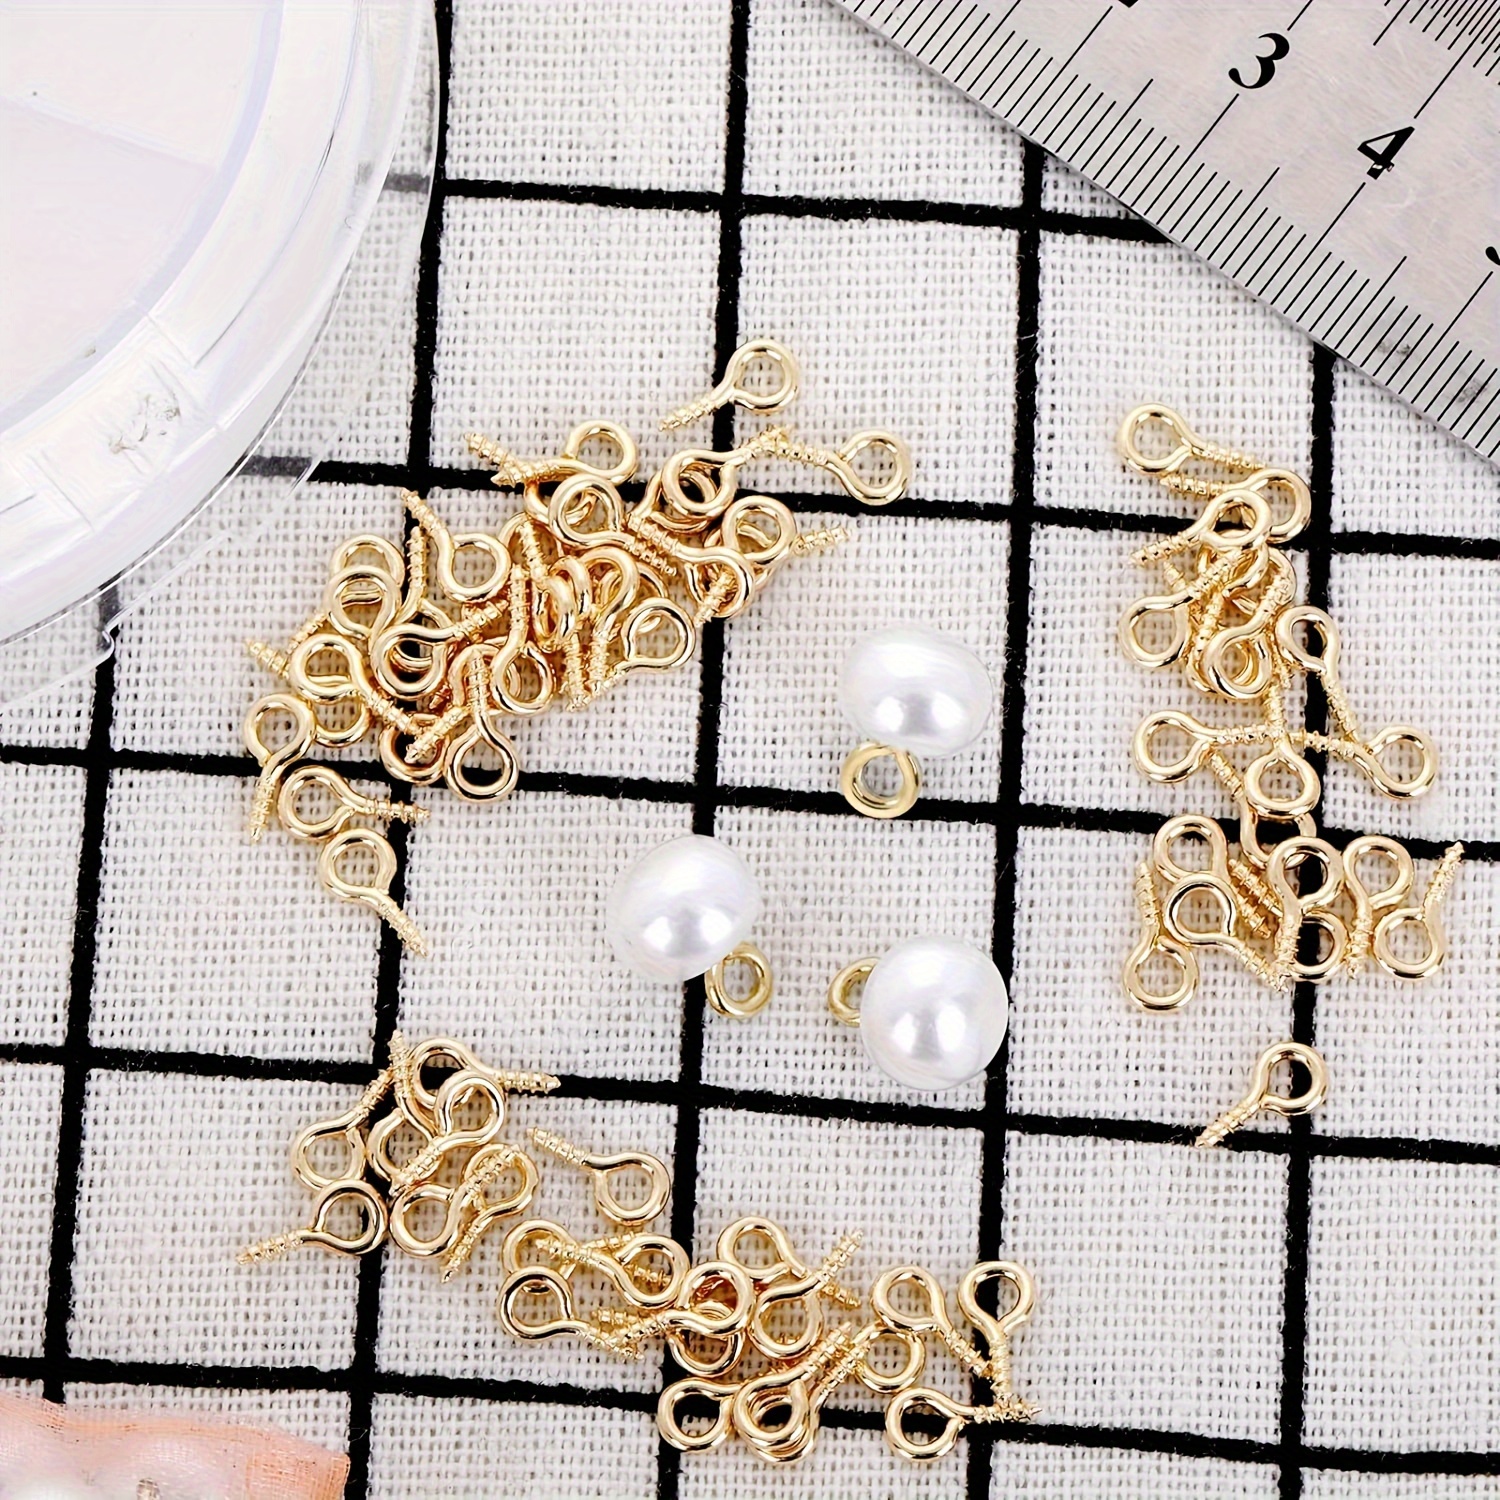  500PCS 4 x 8mm Mini Screw Eye Pins for Jewelry Making